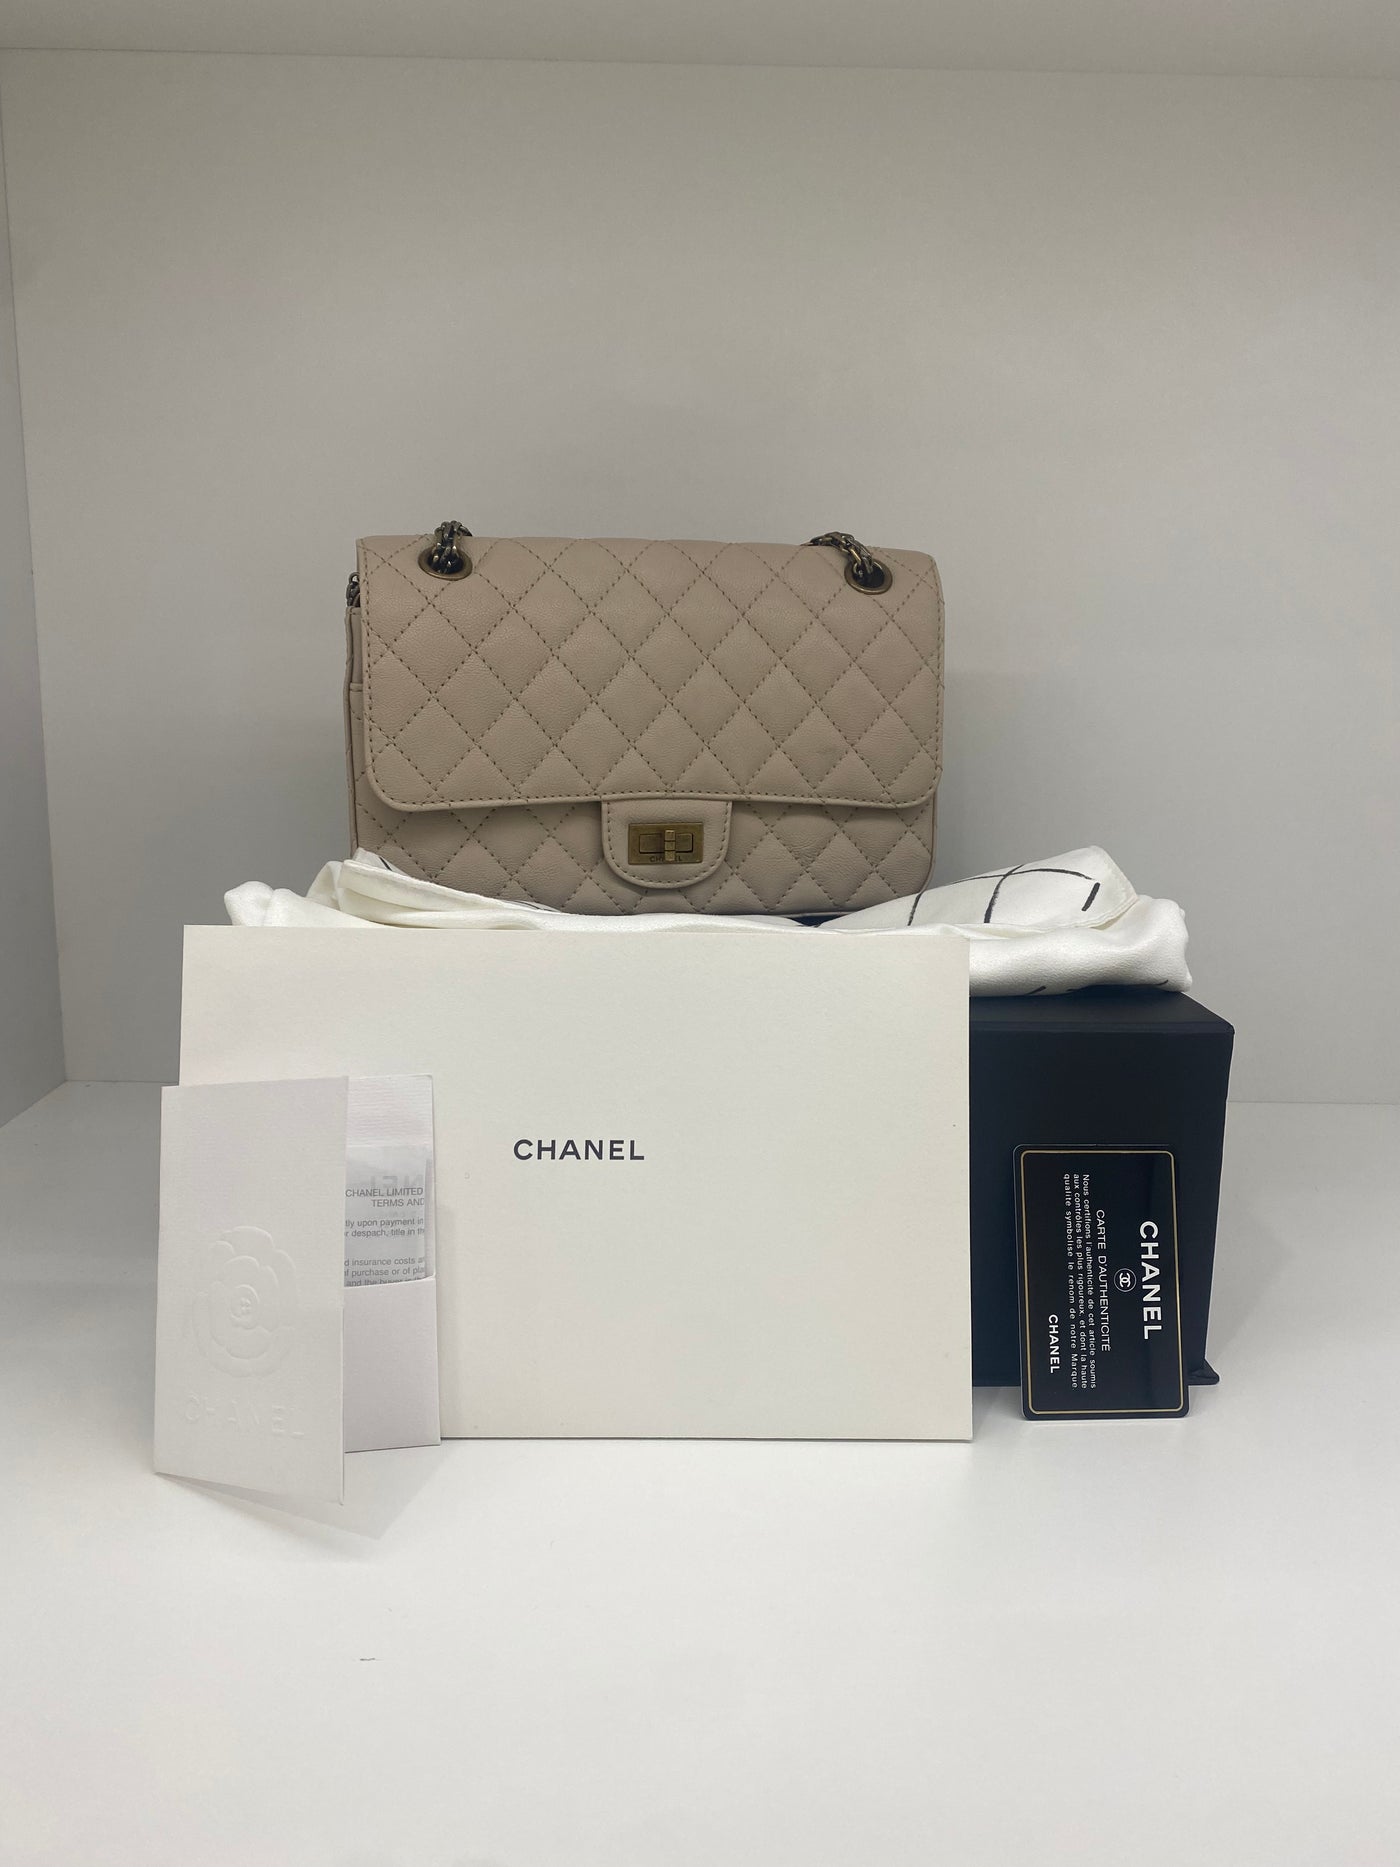 Chanel reissue 2.55 Beige 23 series